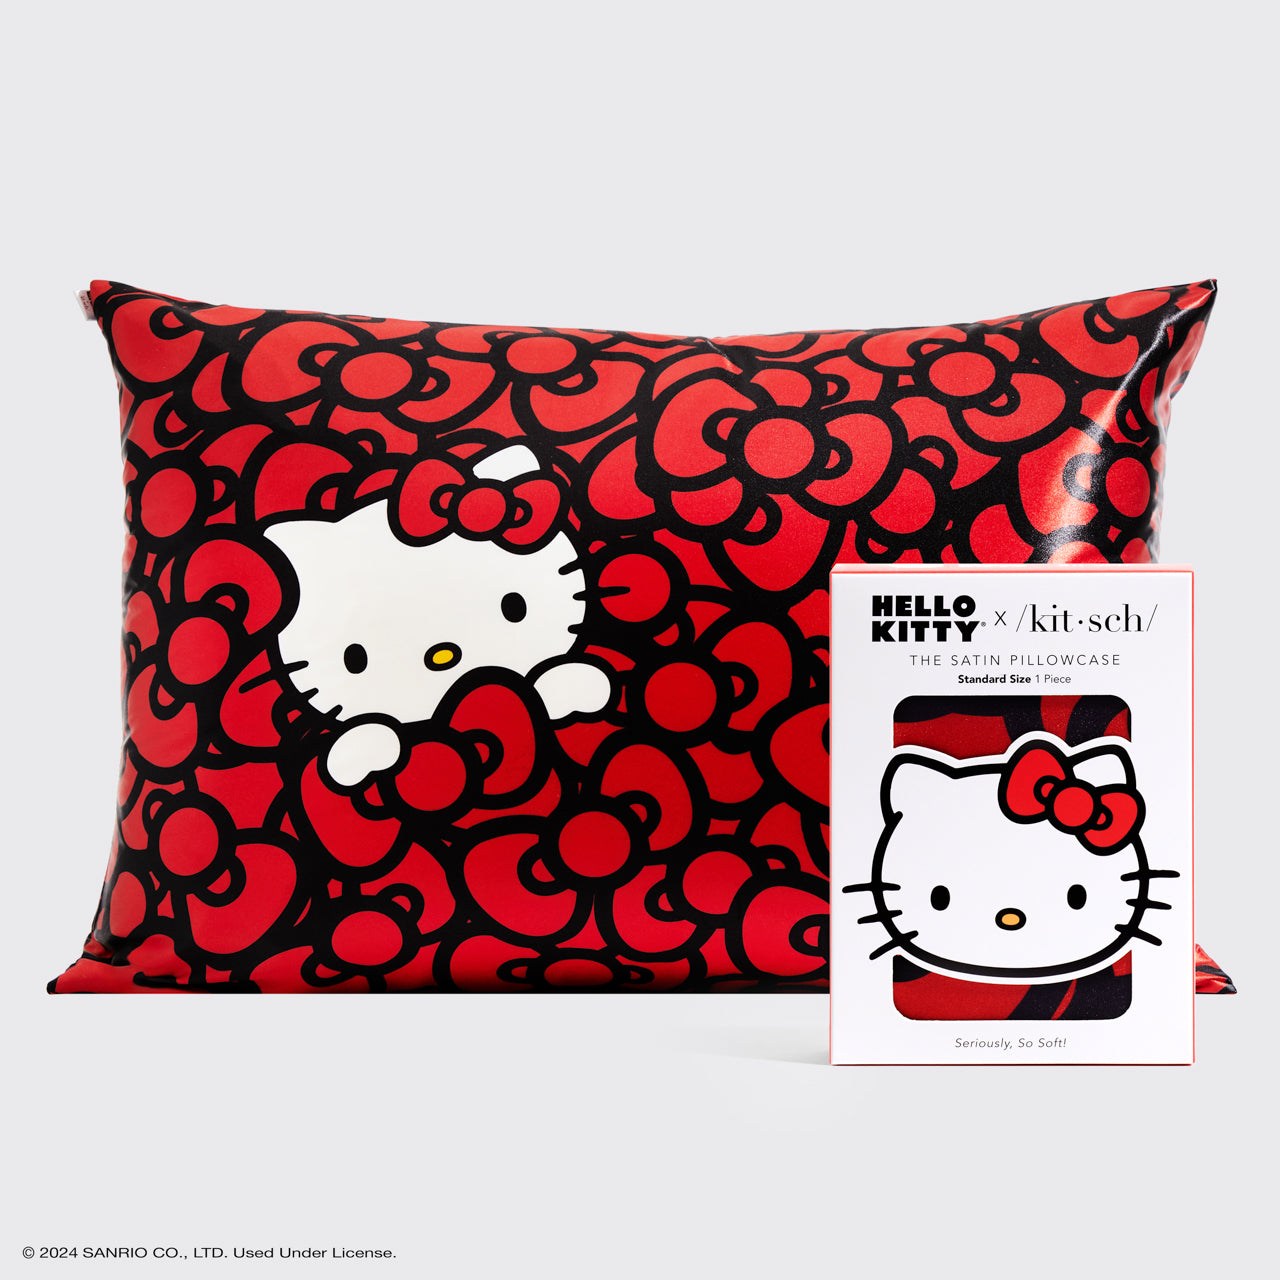 Hello Kitty x Kitsch Satin Pillowcase - Hello Kitty Bathes in a Sea of Bows